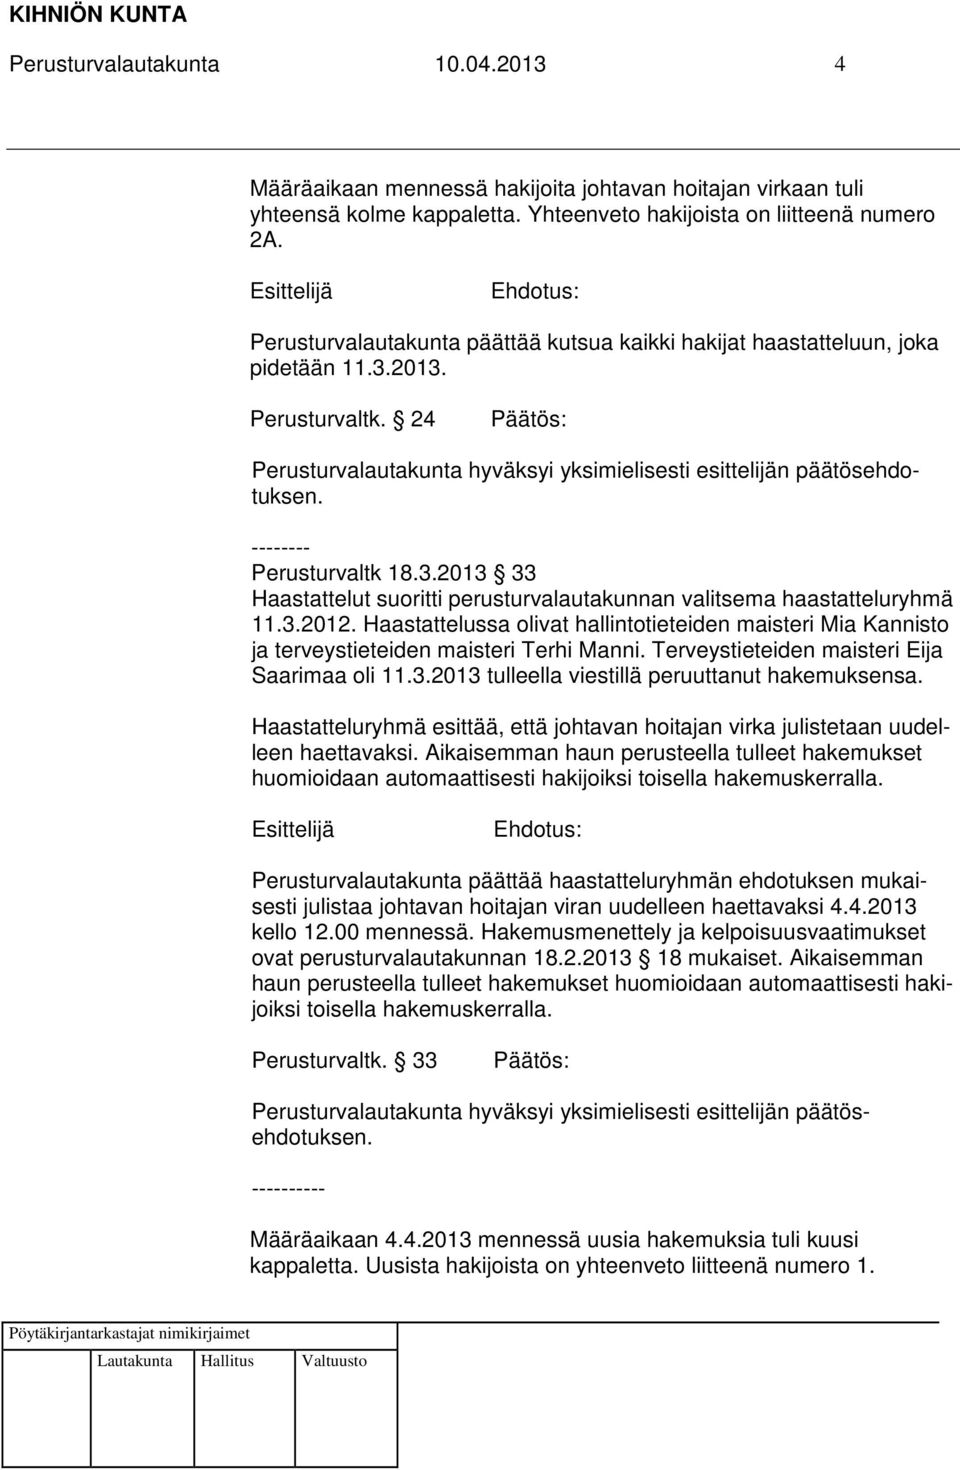 3.2012. Haastattelussa olivat hallintotieteiden maisteri Mia Kannisto ja terveystieteiden maisteri Terhi Manni. Terveystieteiden maisteri Eija Saarimaa oli 11.3.2013 tulleella viestillä peruuttanut hakemuksensa.